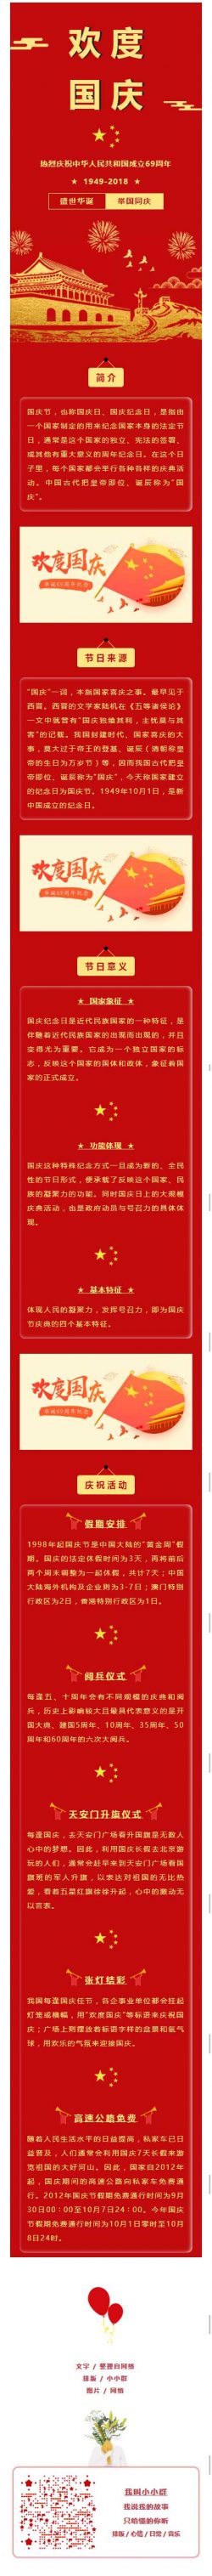 国庆节十一黄金周党政风格红色文章模板微信公众号推文